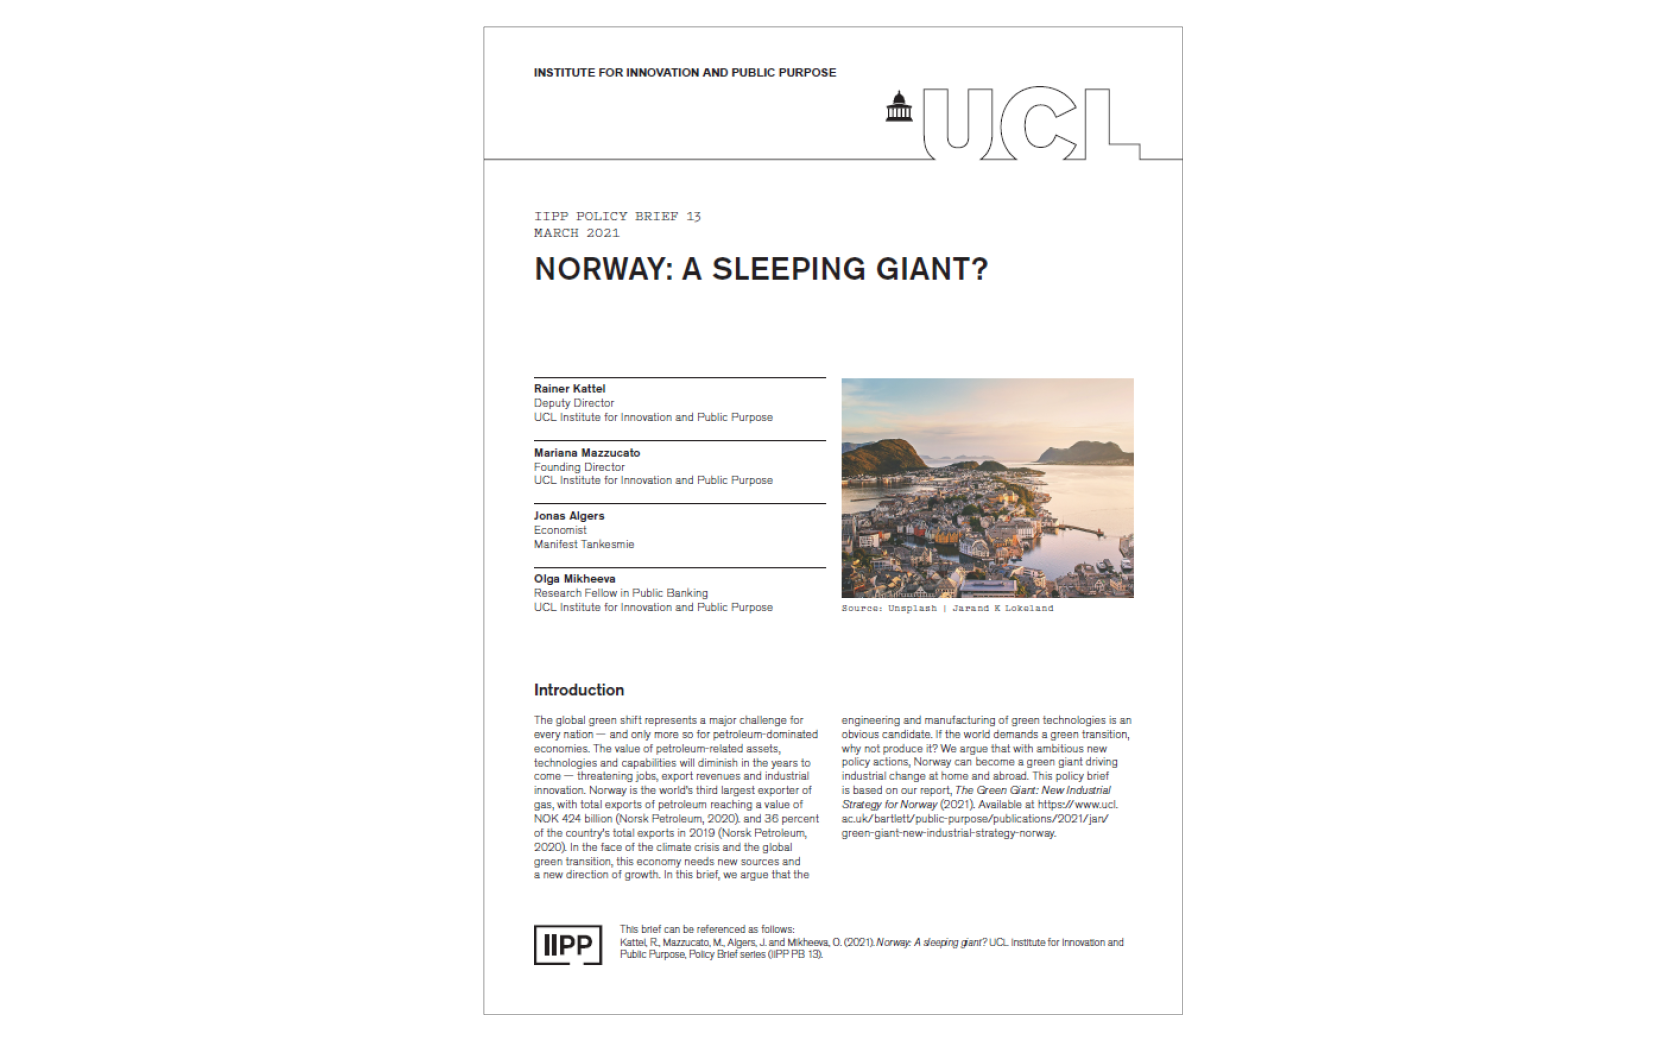 IIPP PB13 Norway: A sleeping giant